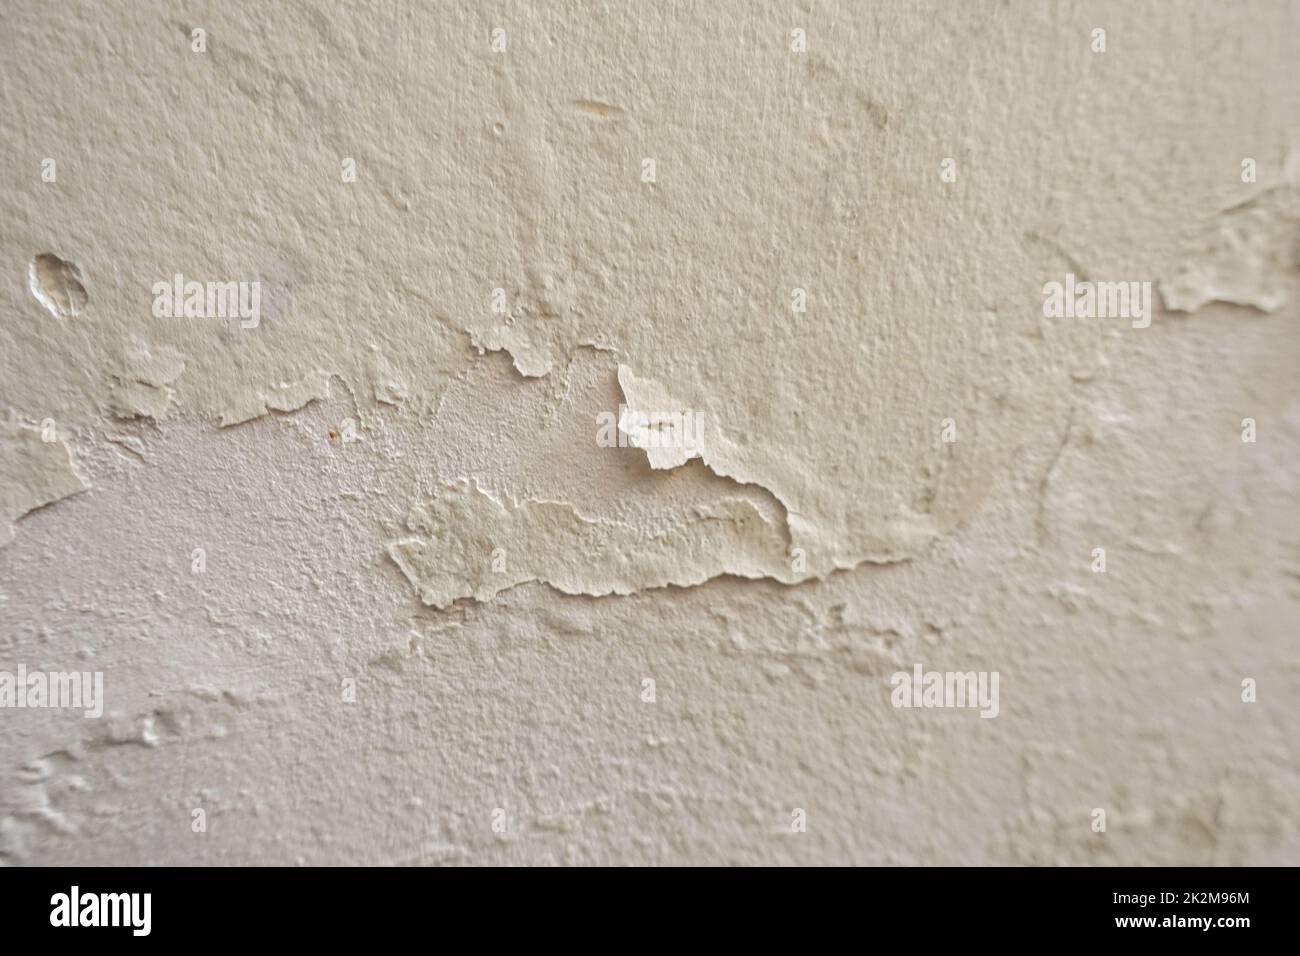 Wand, deren Farbe sich aufgrund von Wasser und Feuchtigkeit abgelöst hat Stockfoto